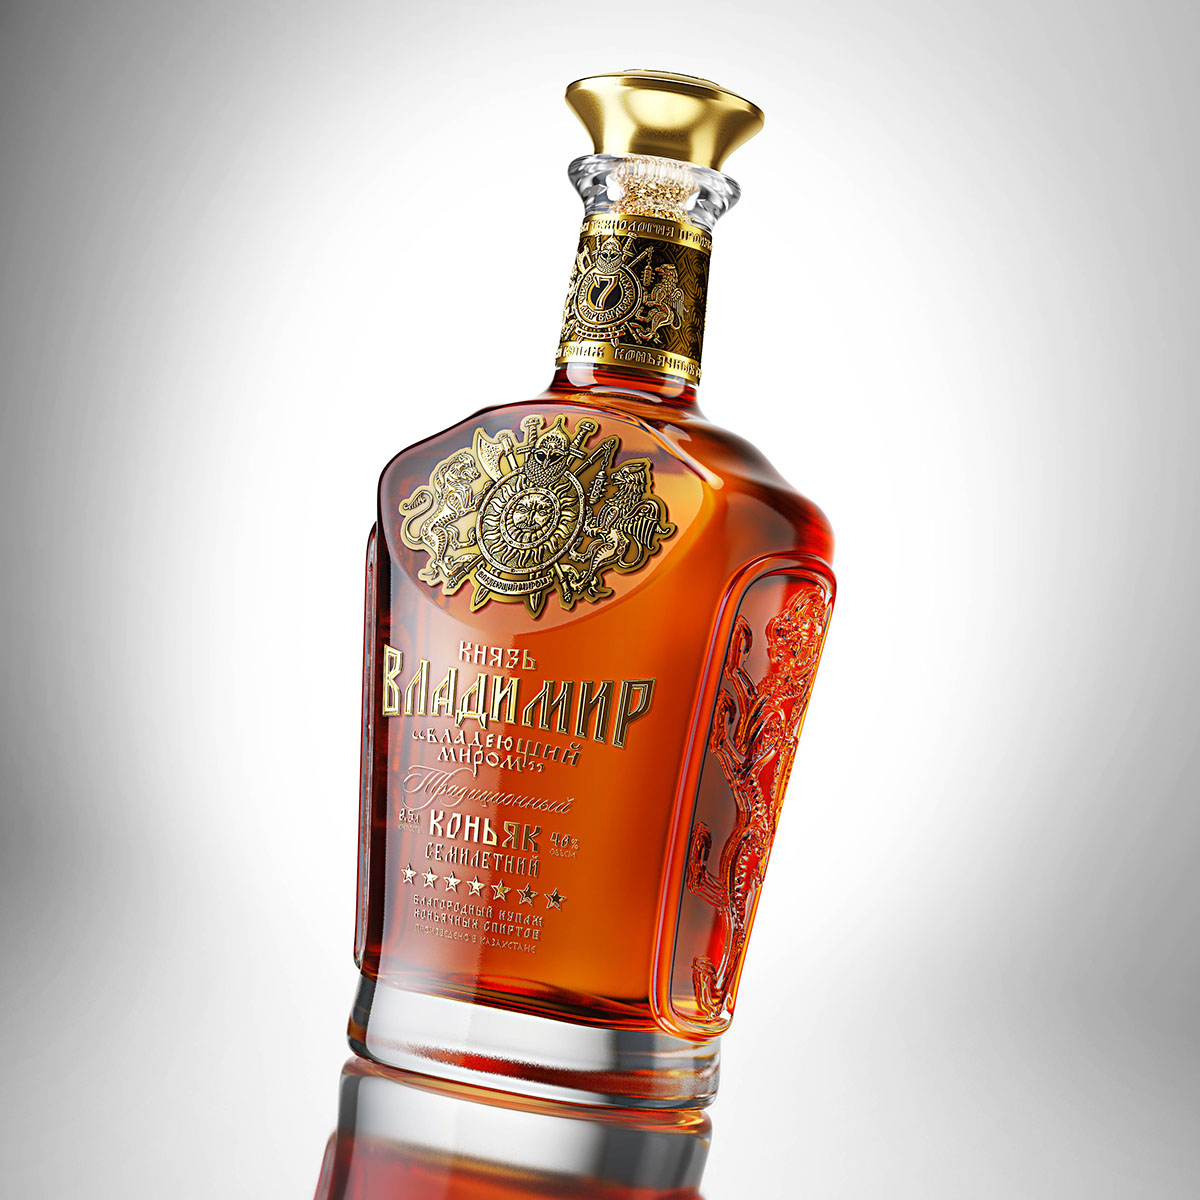 3D Visualization 3D bottle render Render of wine bottle bottle render 3D packaging visualization CGI vodka render cognac render bottle 3d rendering Packshot Cognac